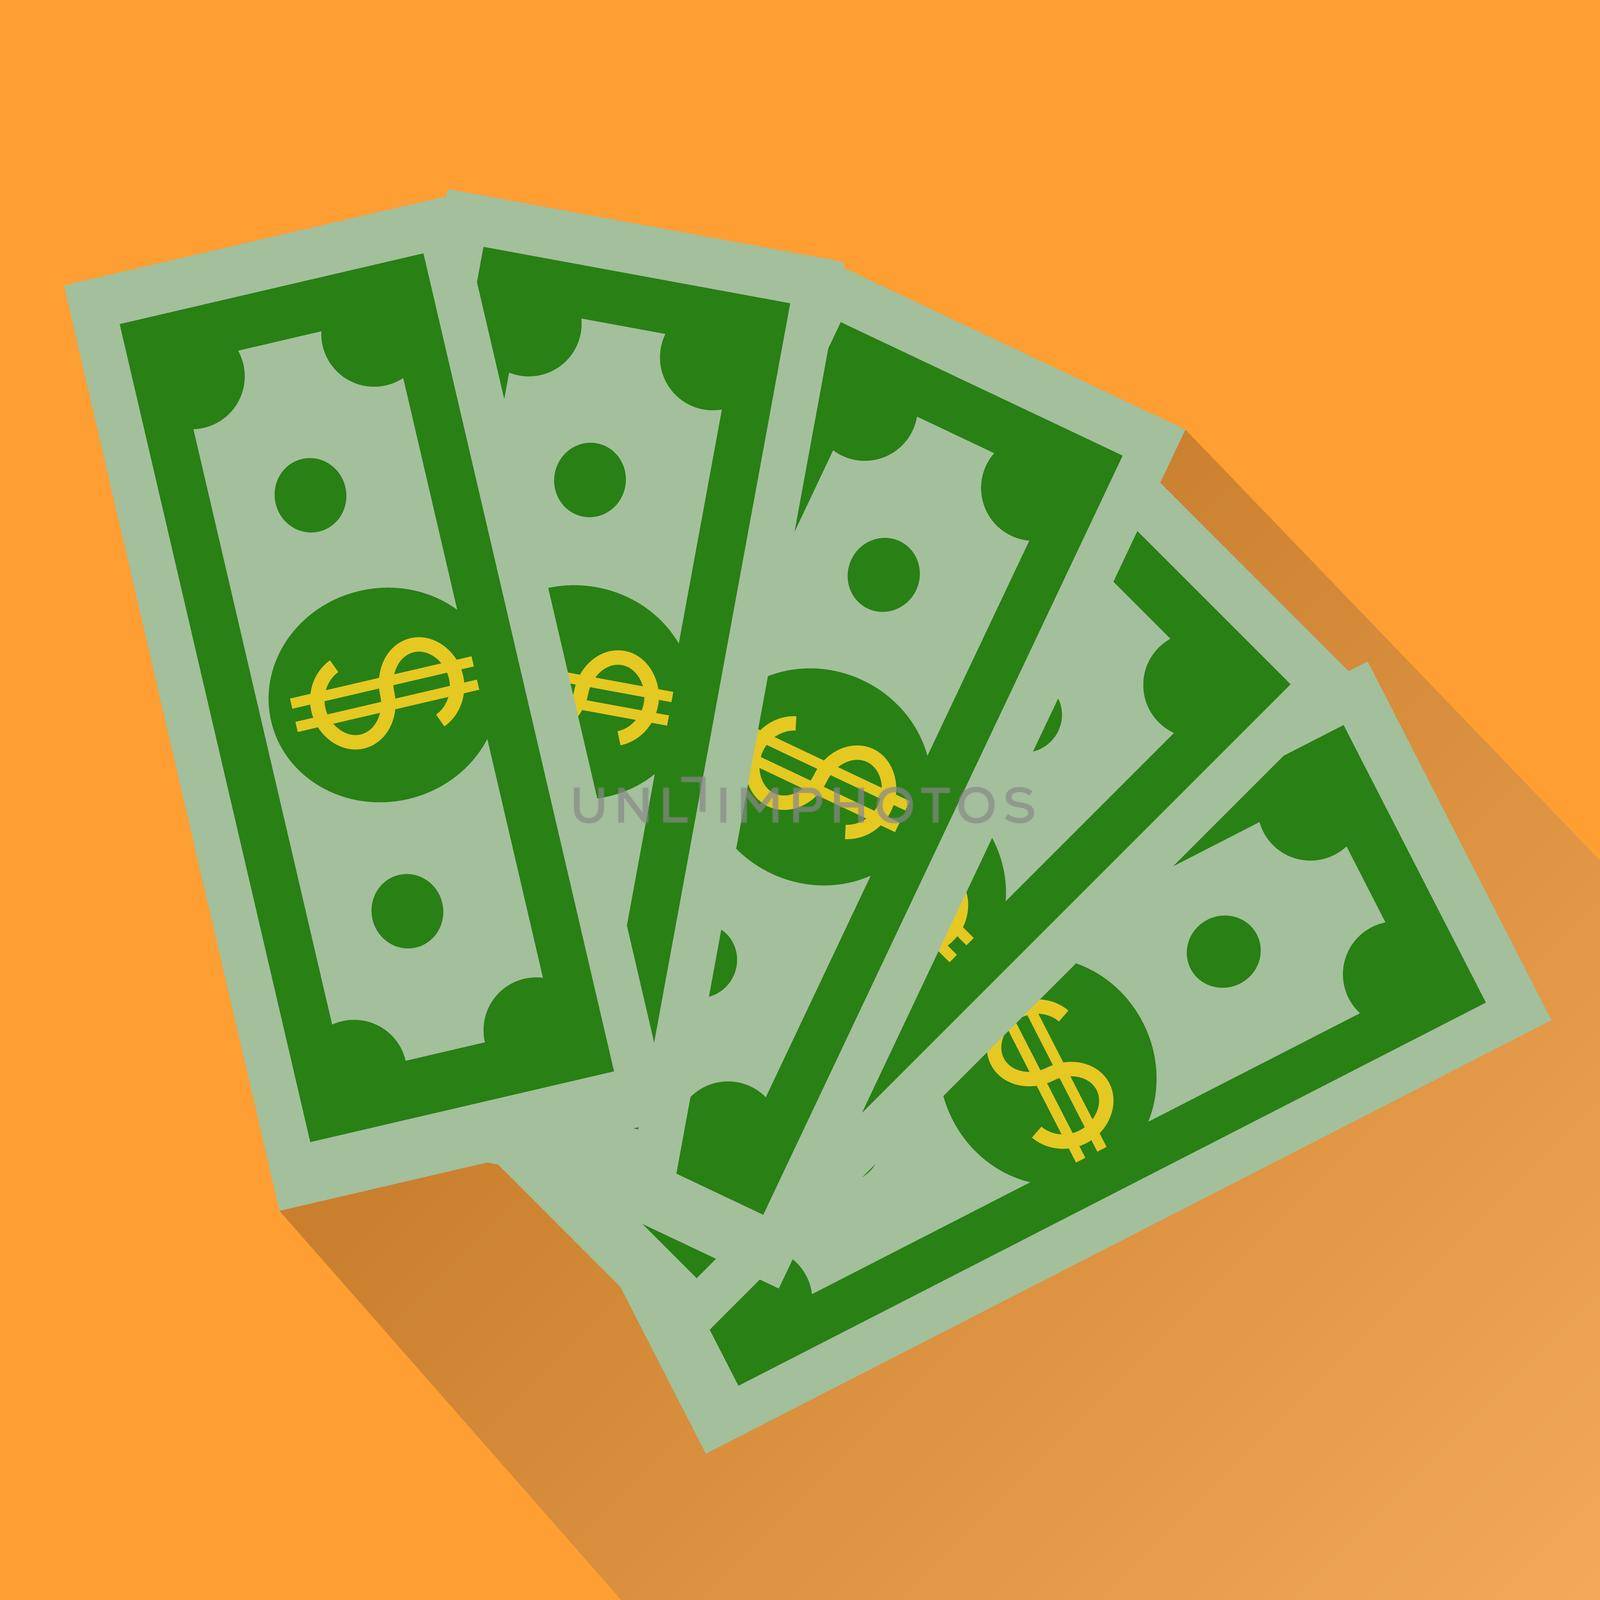 Cash, Green Dollars Icon isolated on orange background. Money Illustration